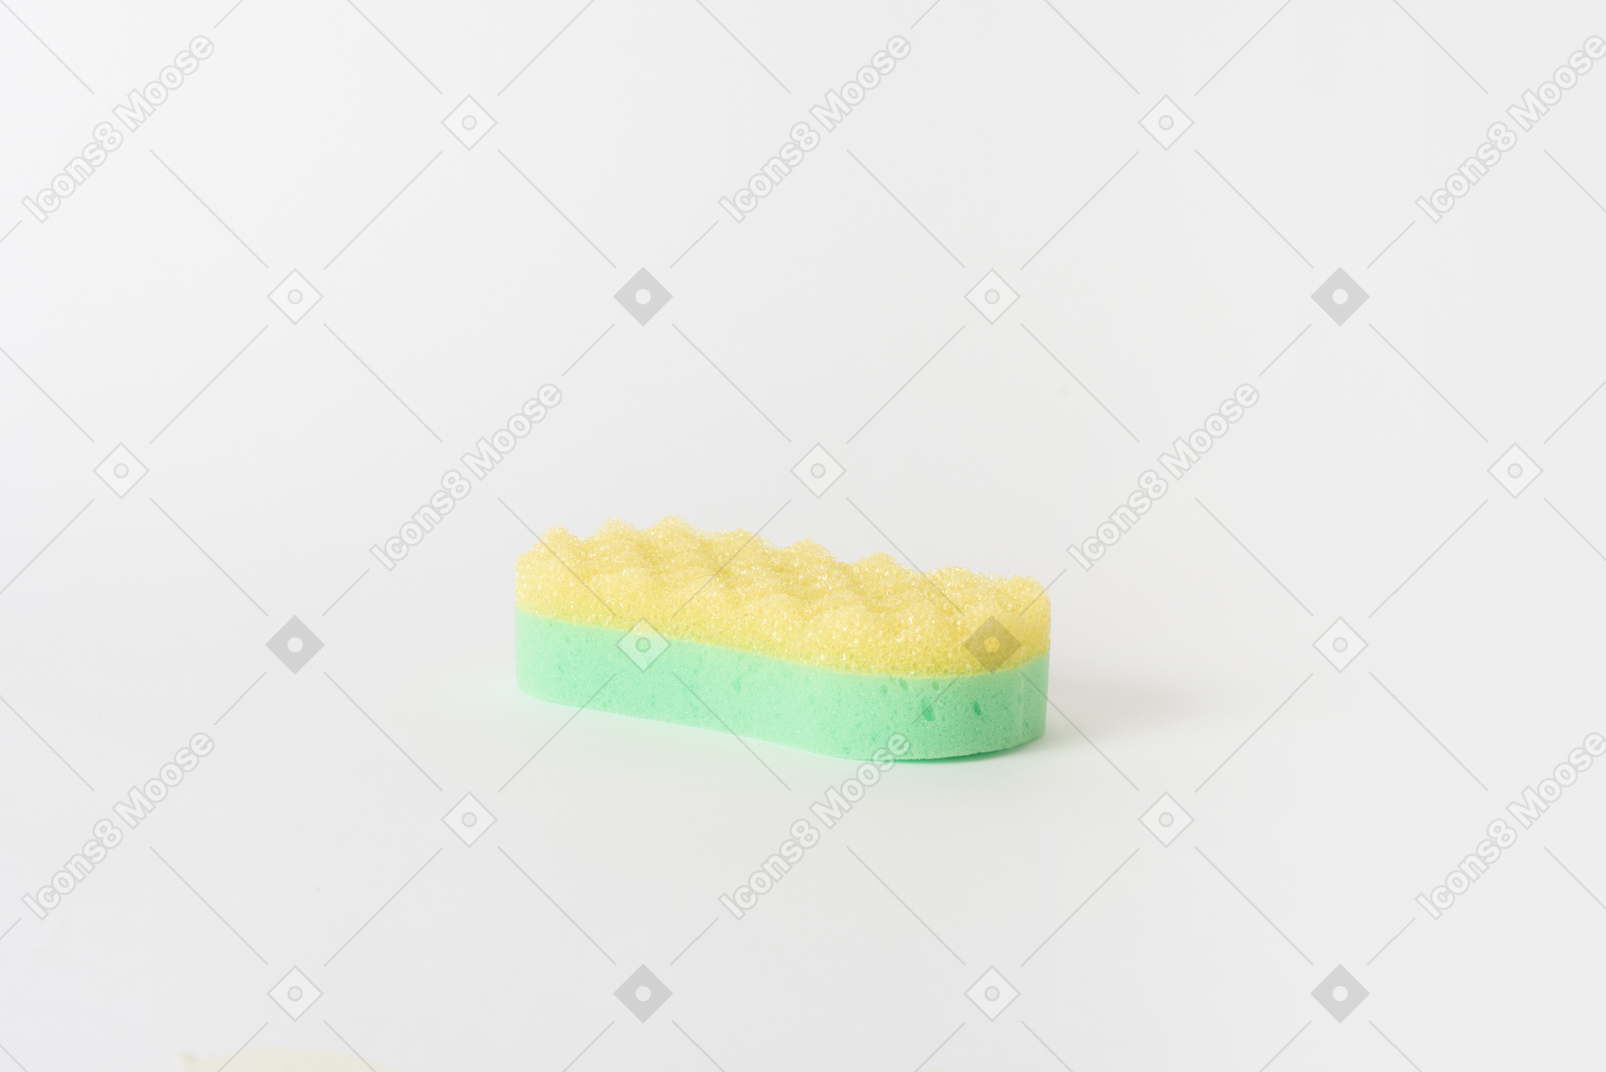 La limpieza del baño es fácil con esta esponja.